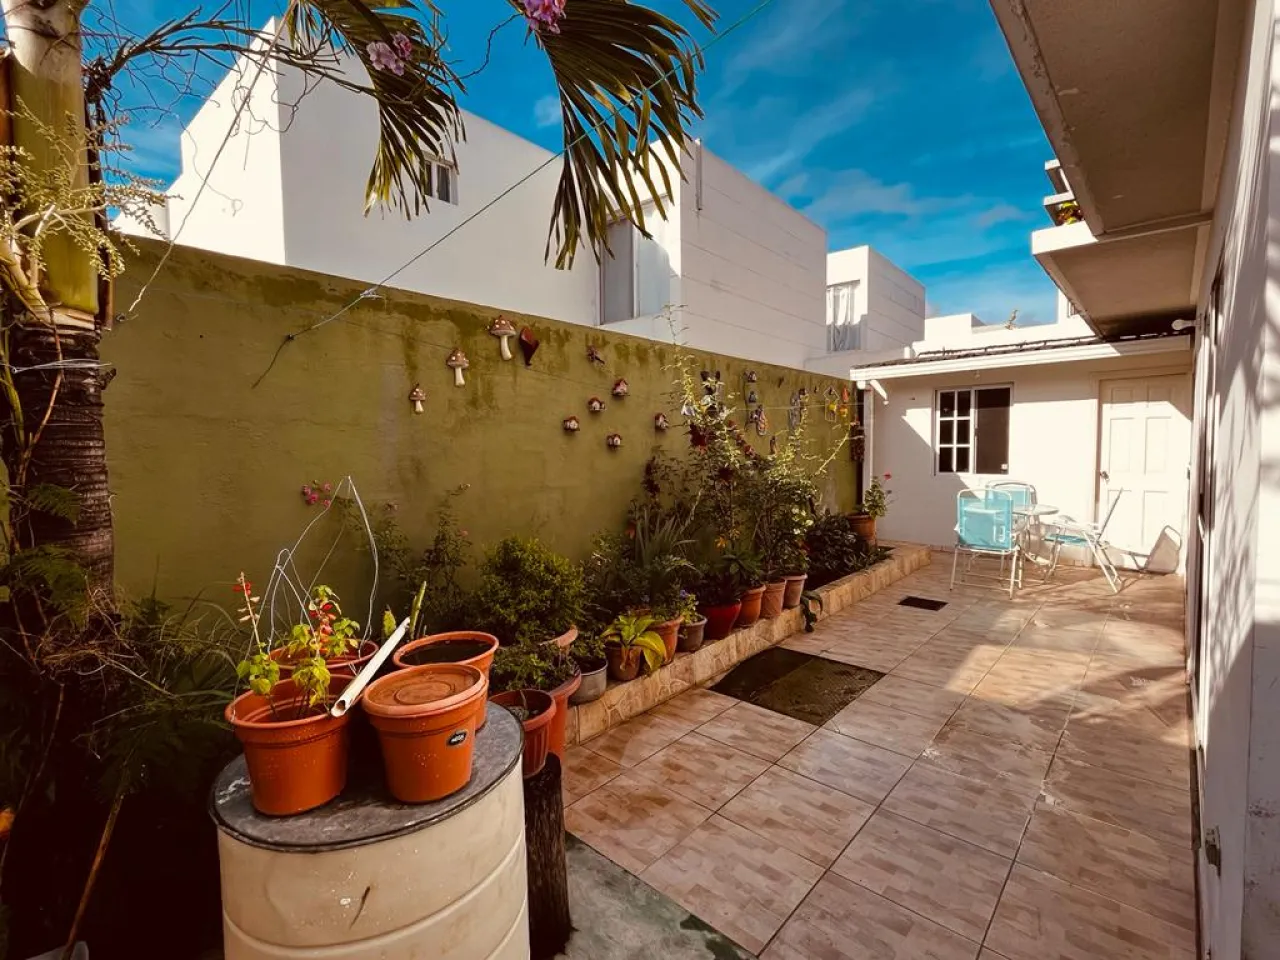 Esta vivienda cuenta con un bonito patio que puedes personalizar a tu gusto incluso colocar plantas para crear un ambiente más acogedor.